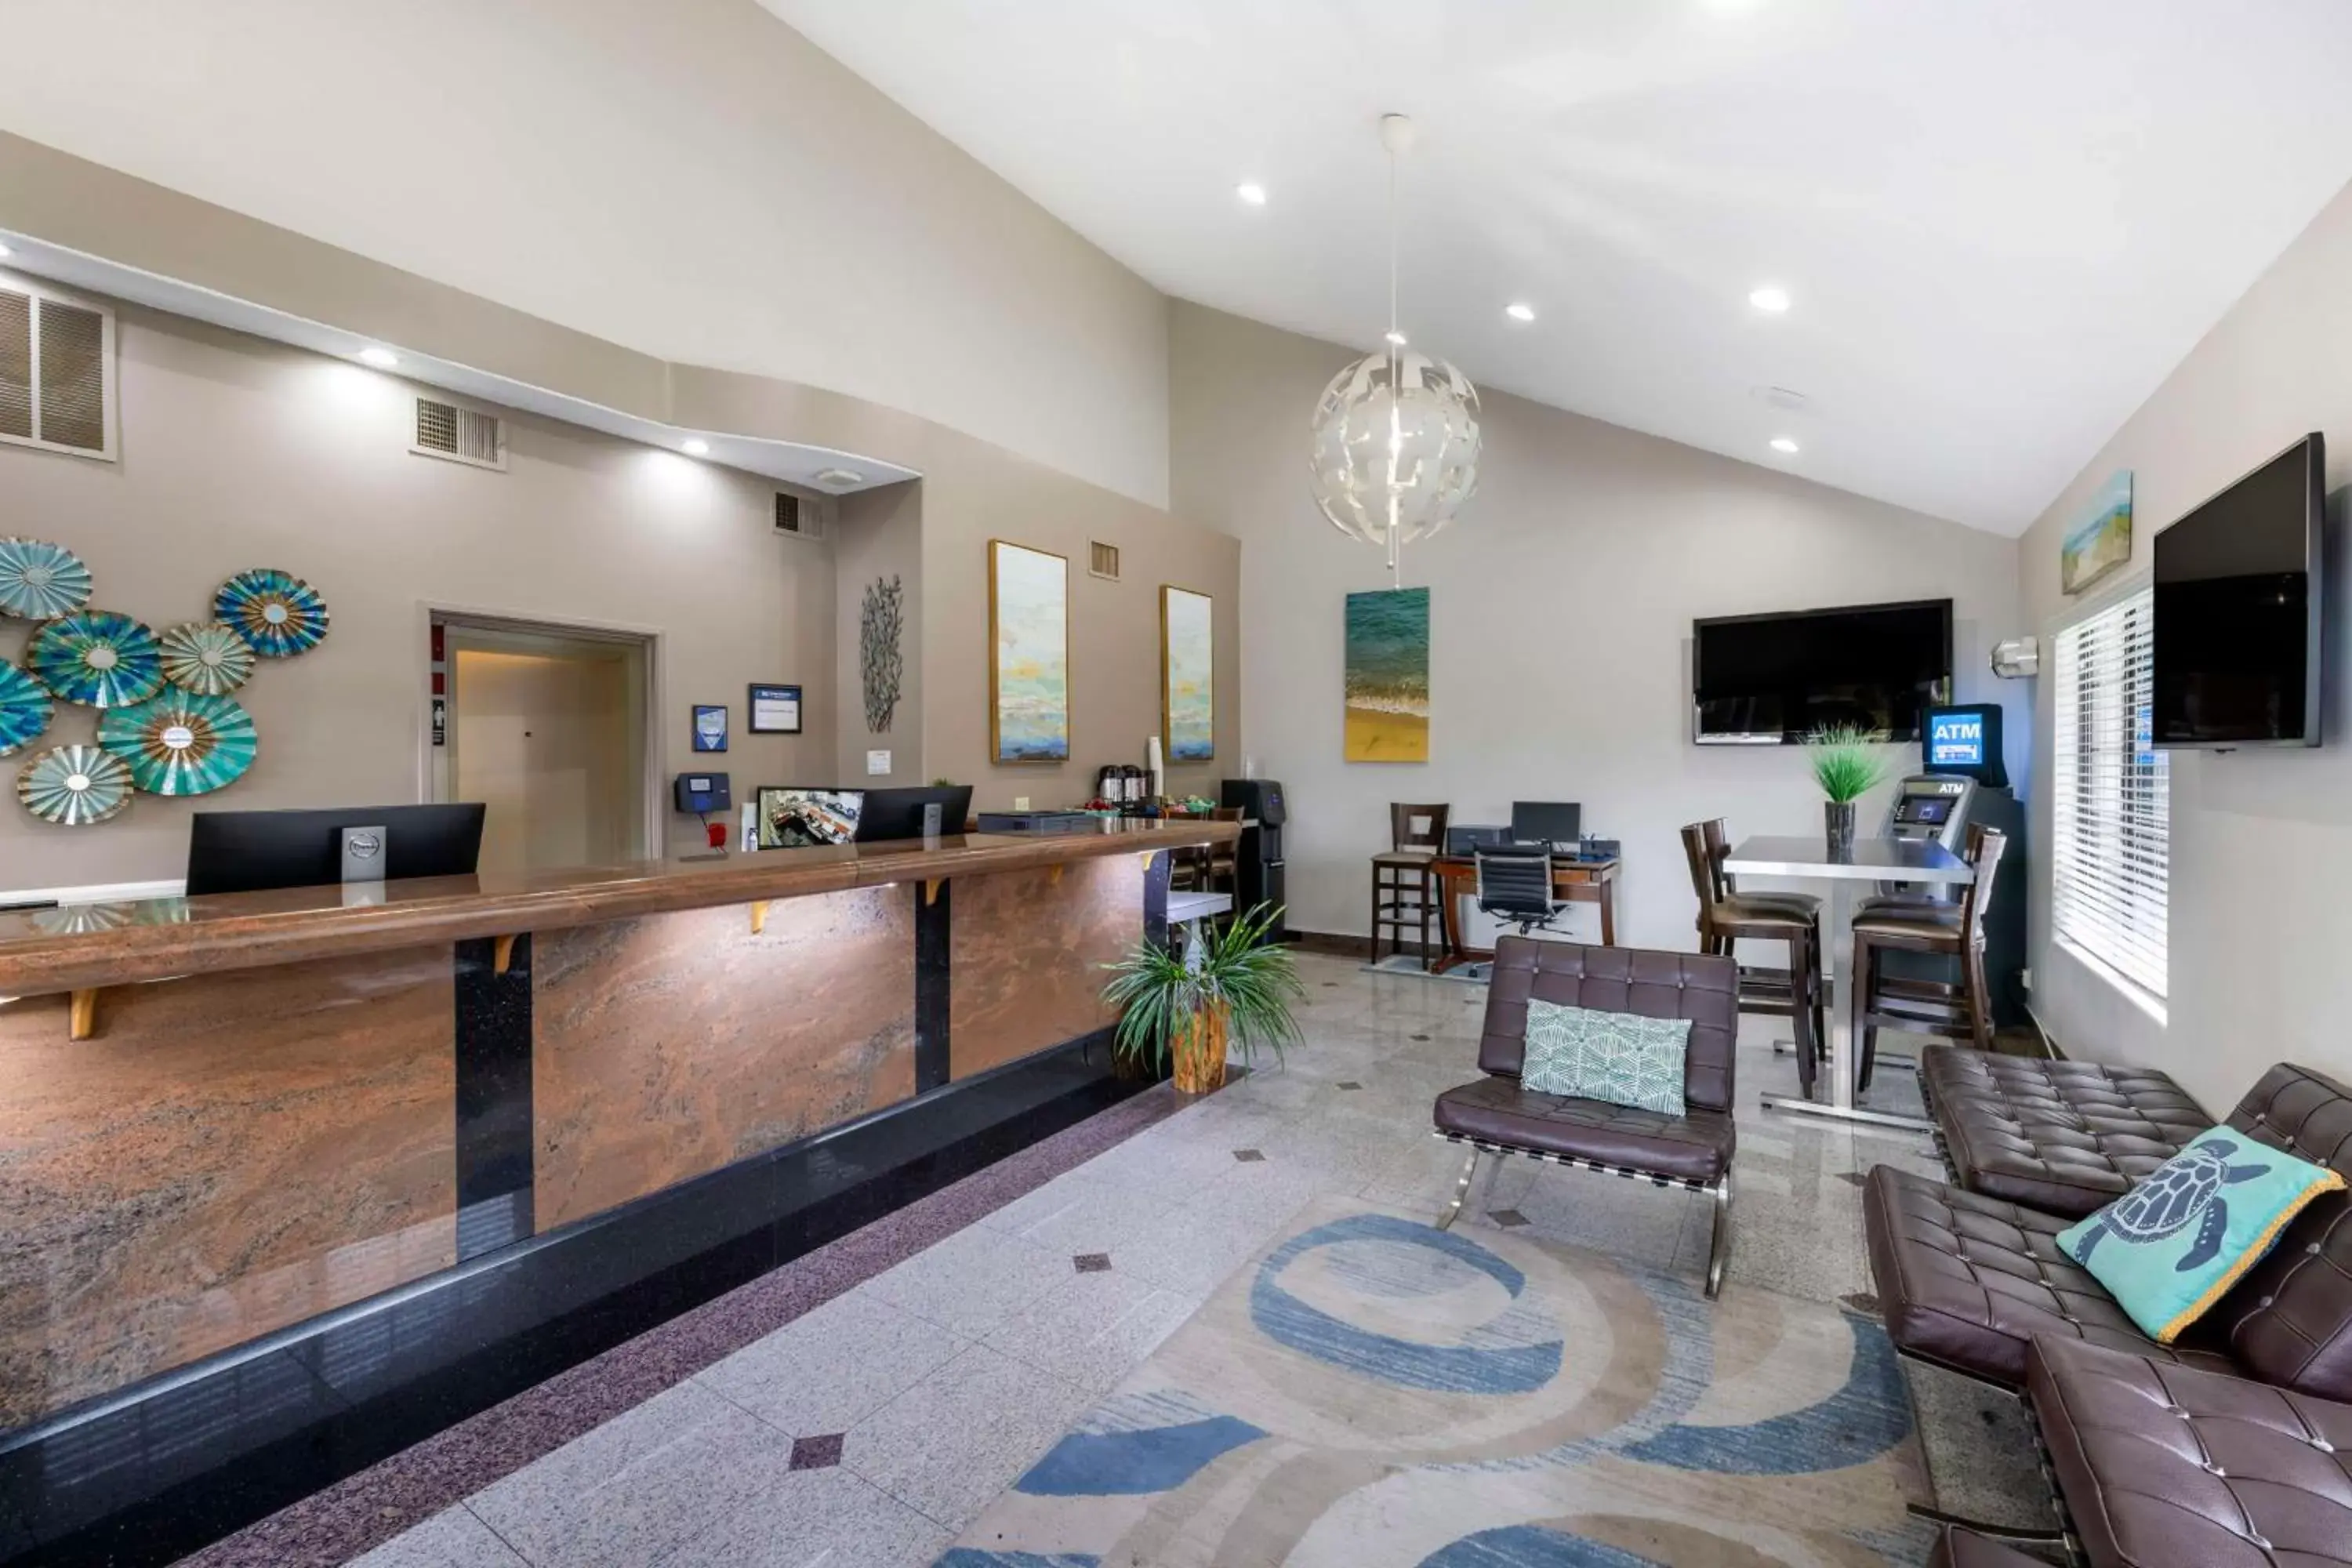 Lobby or reception, Lobby/Reception in Best Western Redondo Beach Galleria Inn Hotel - Beach City LA